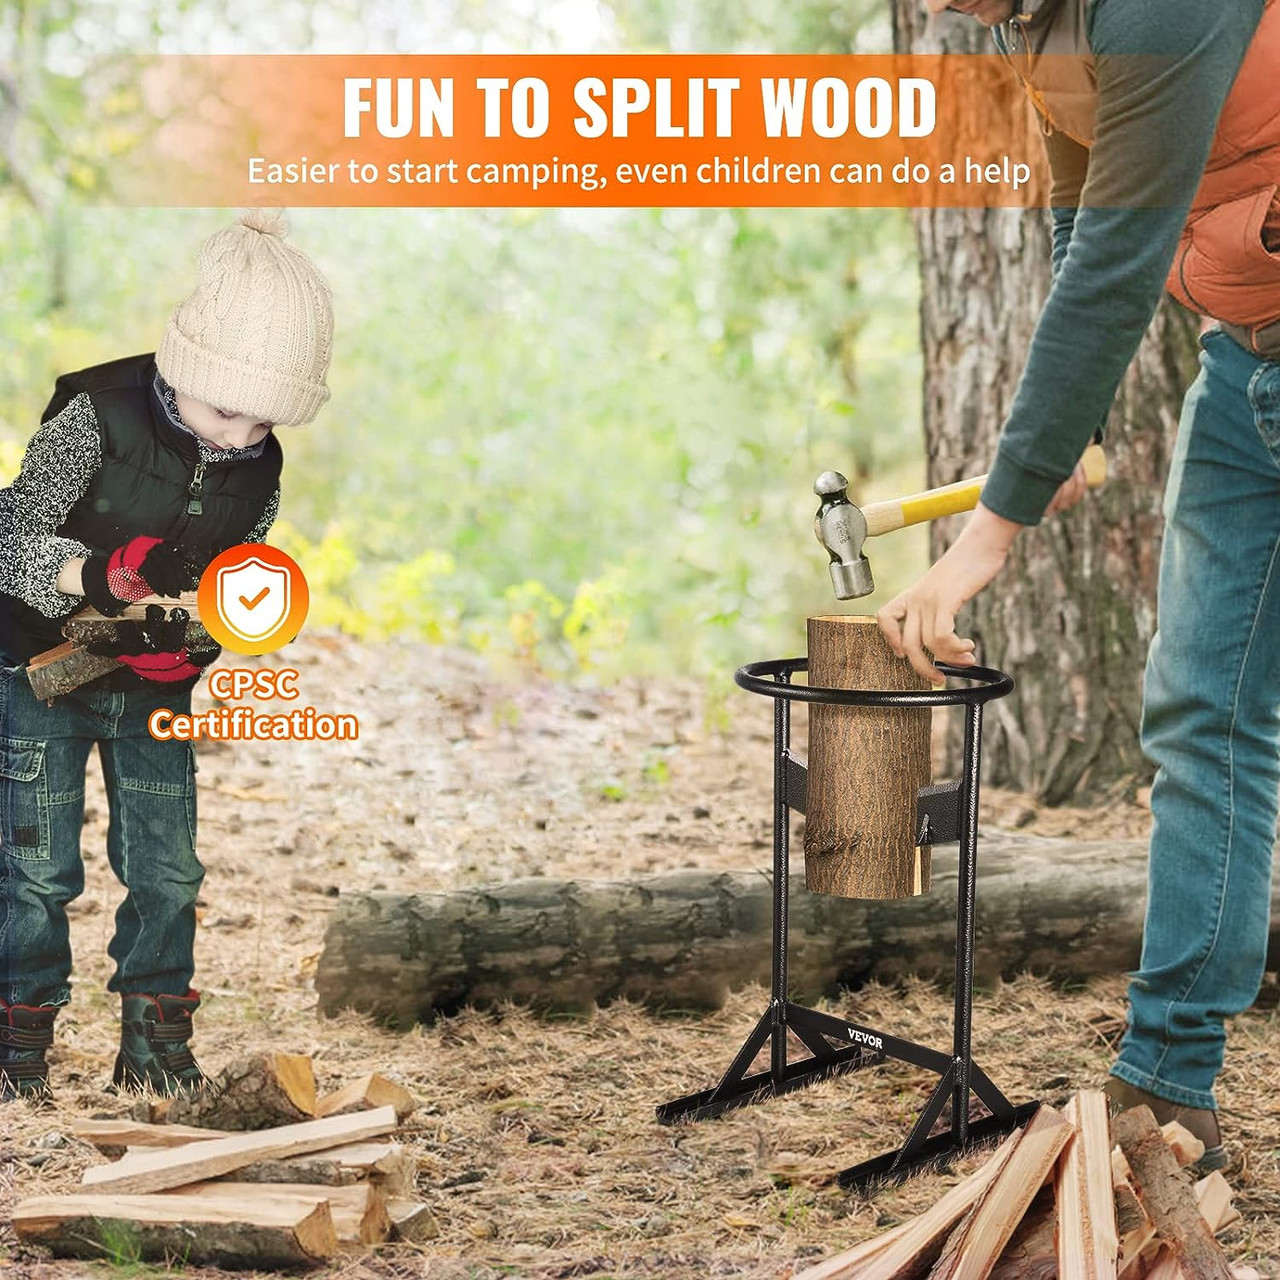 Firewood Kindling Splitter, 9''x17'' XL Wood Splitter, Unique V-Shaped Finger-Safety Blade, Manual Log Splitter for Wood Splitting, Heavy Duty Strong